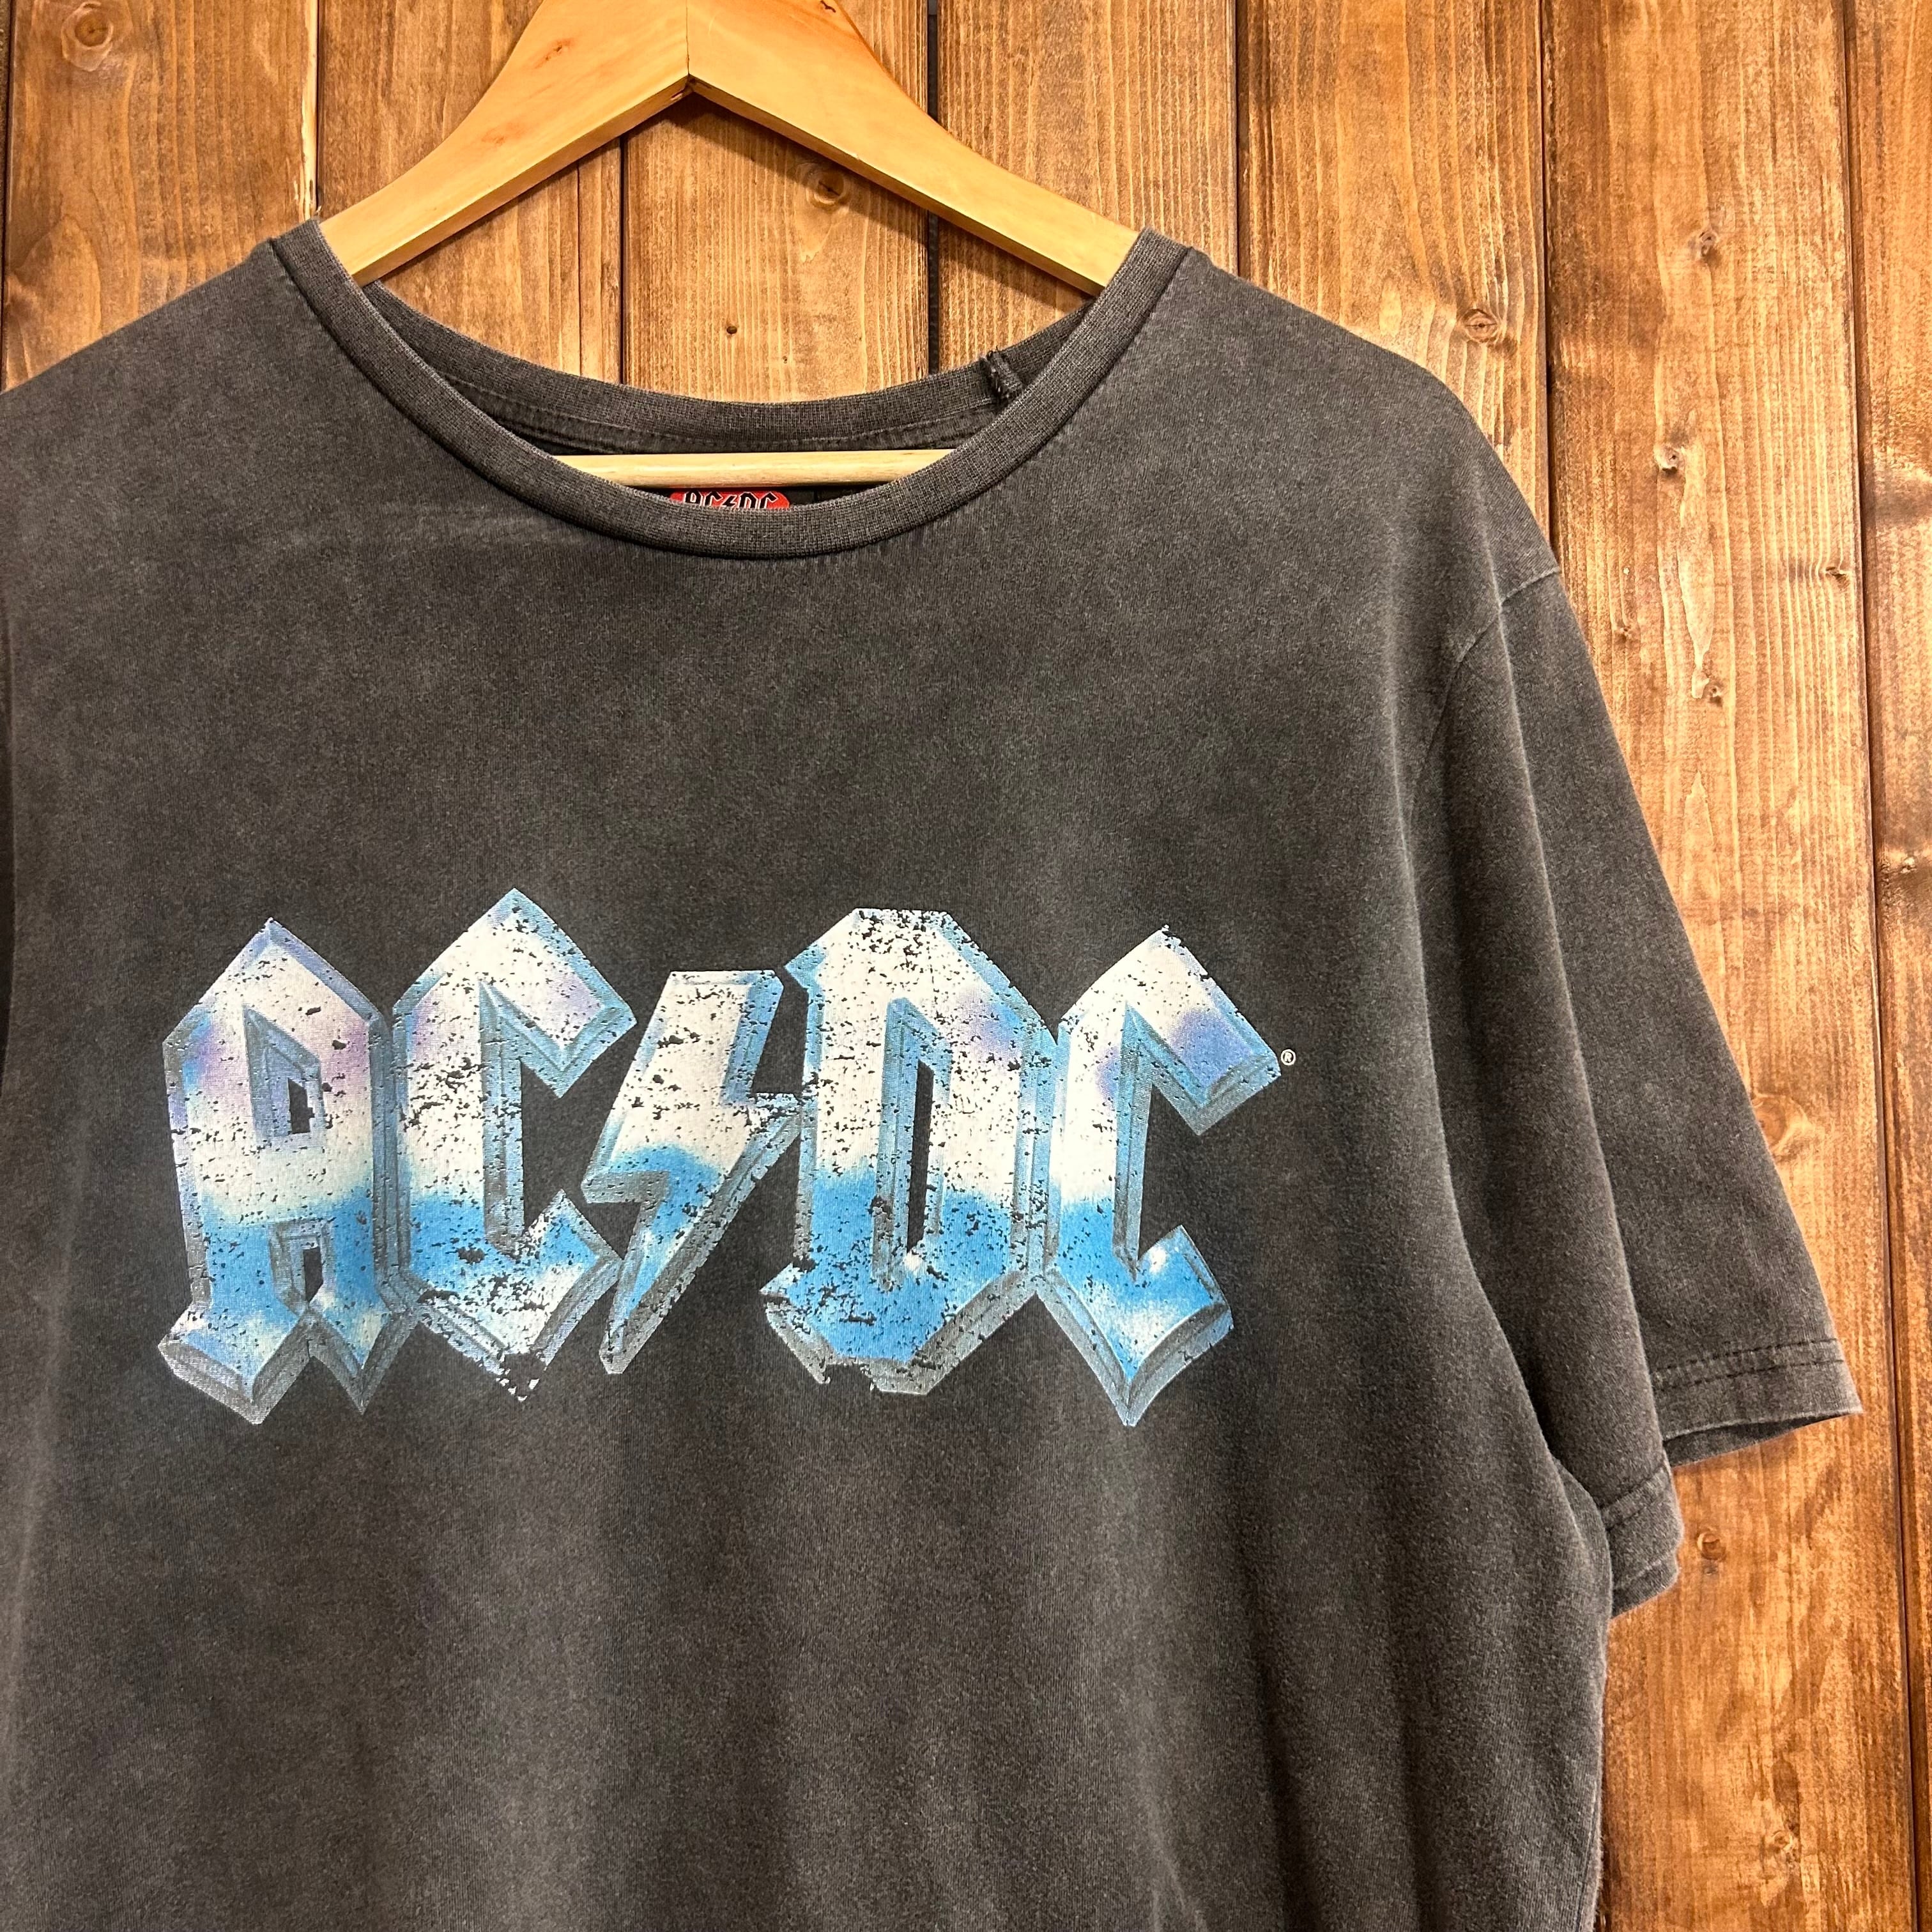 バンドTシャツ AC/DC ヴィンテージ ビンテージ ロックTシャツ